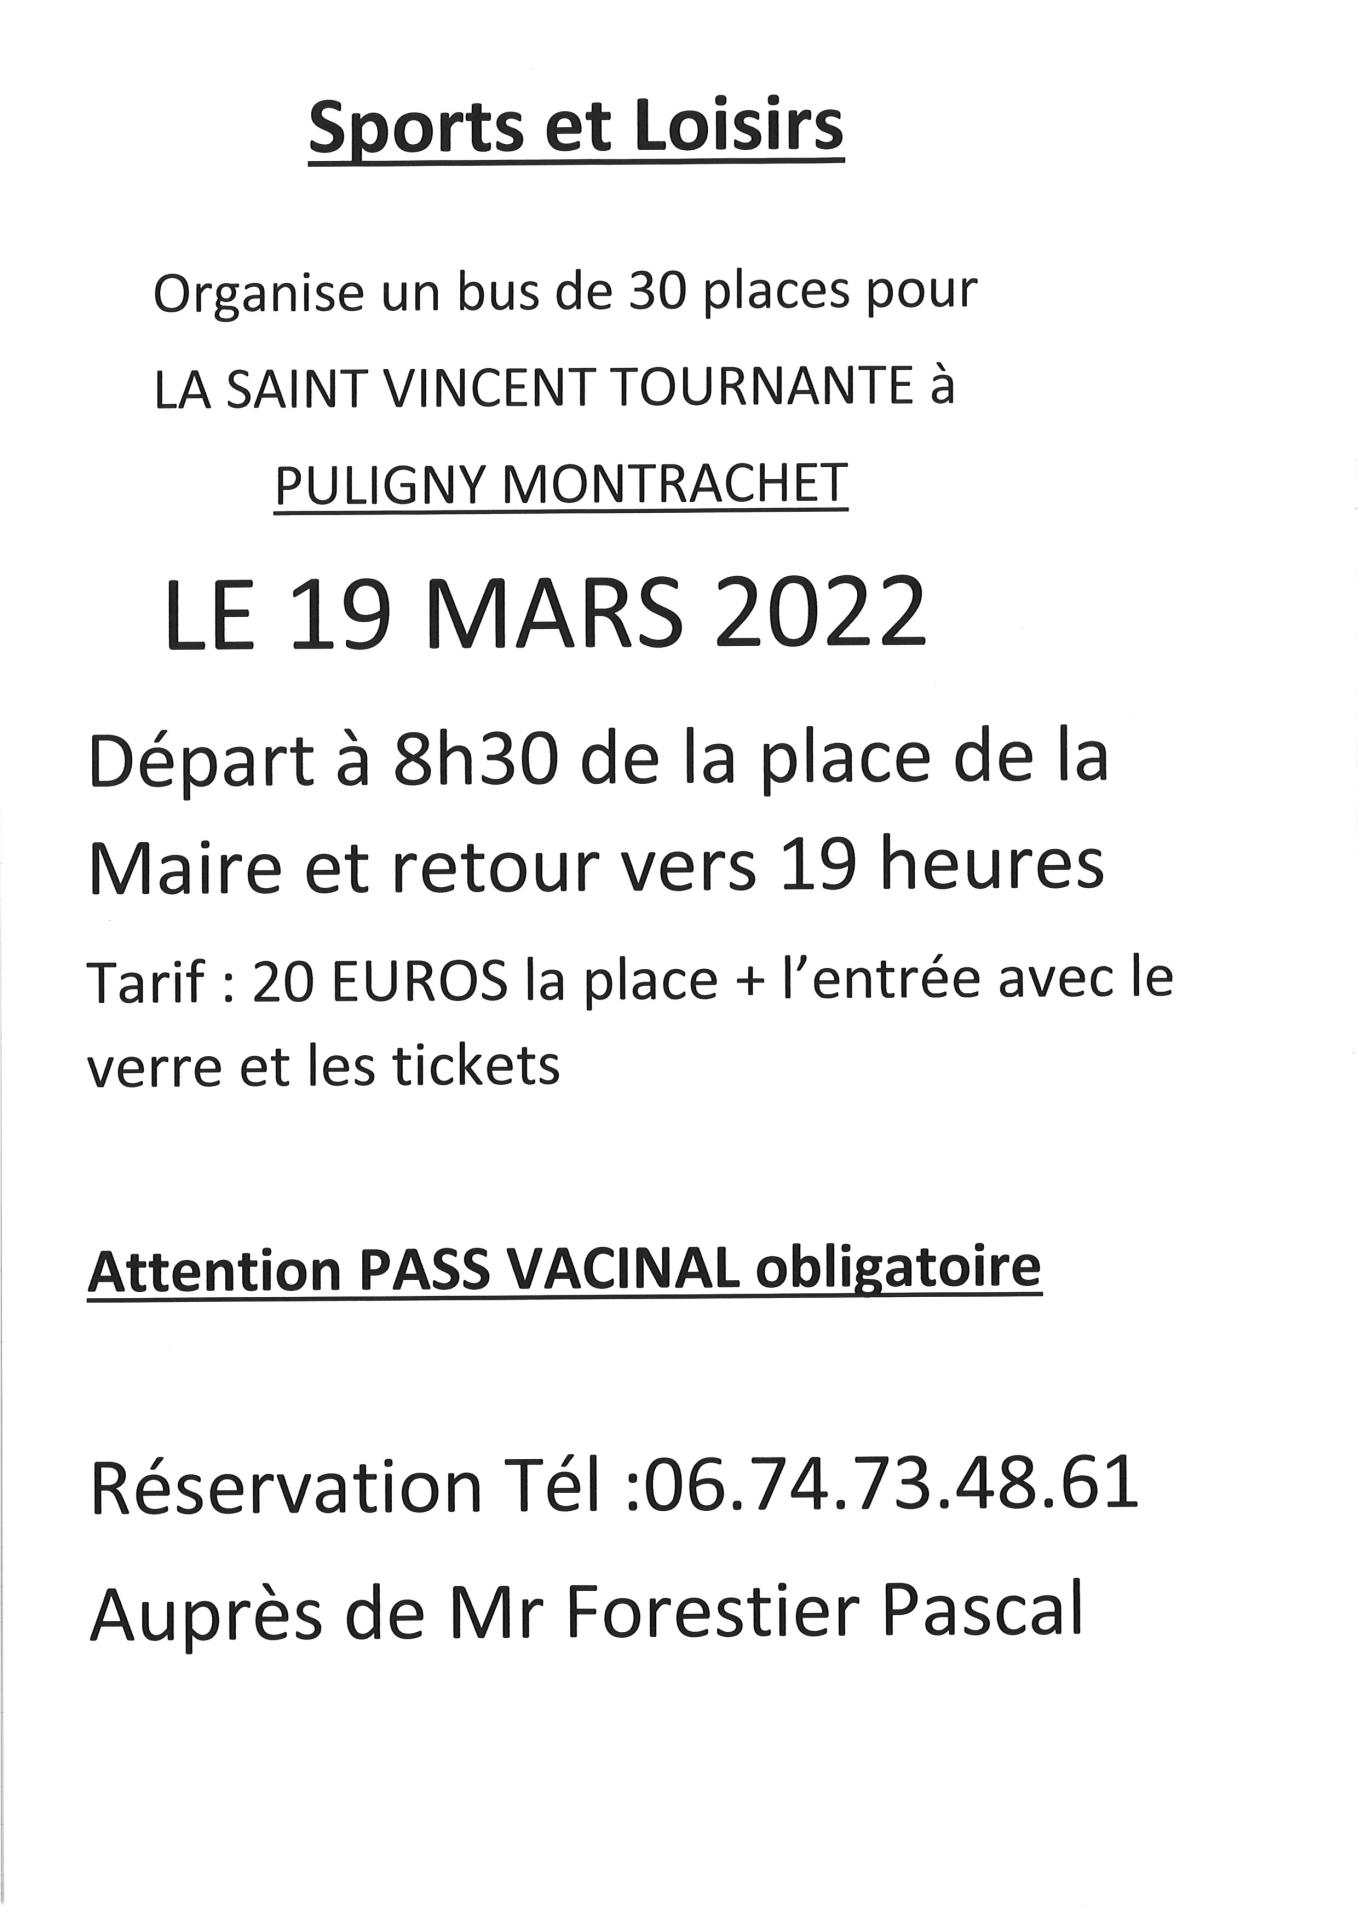 Saint Vincent Tournante le 19 mars 2022